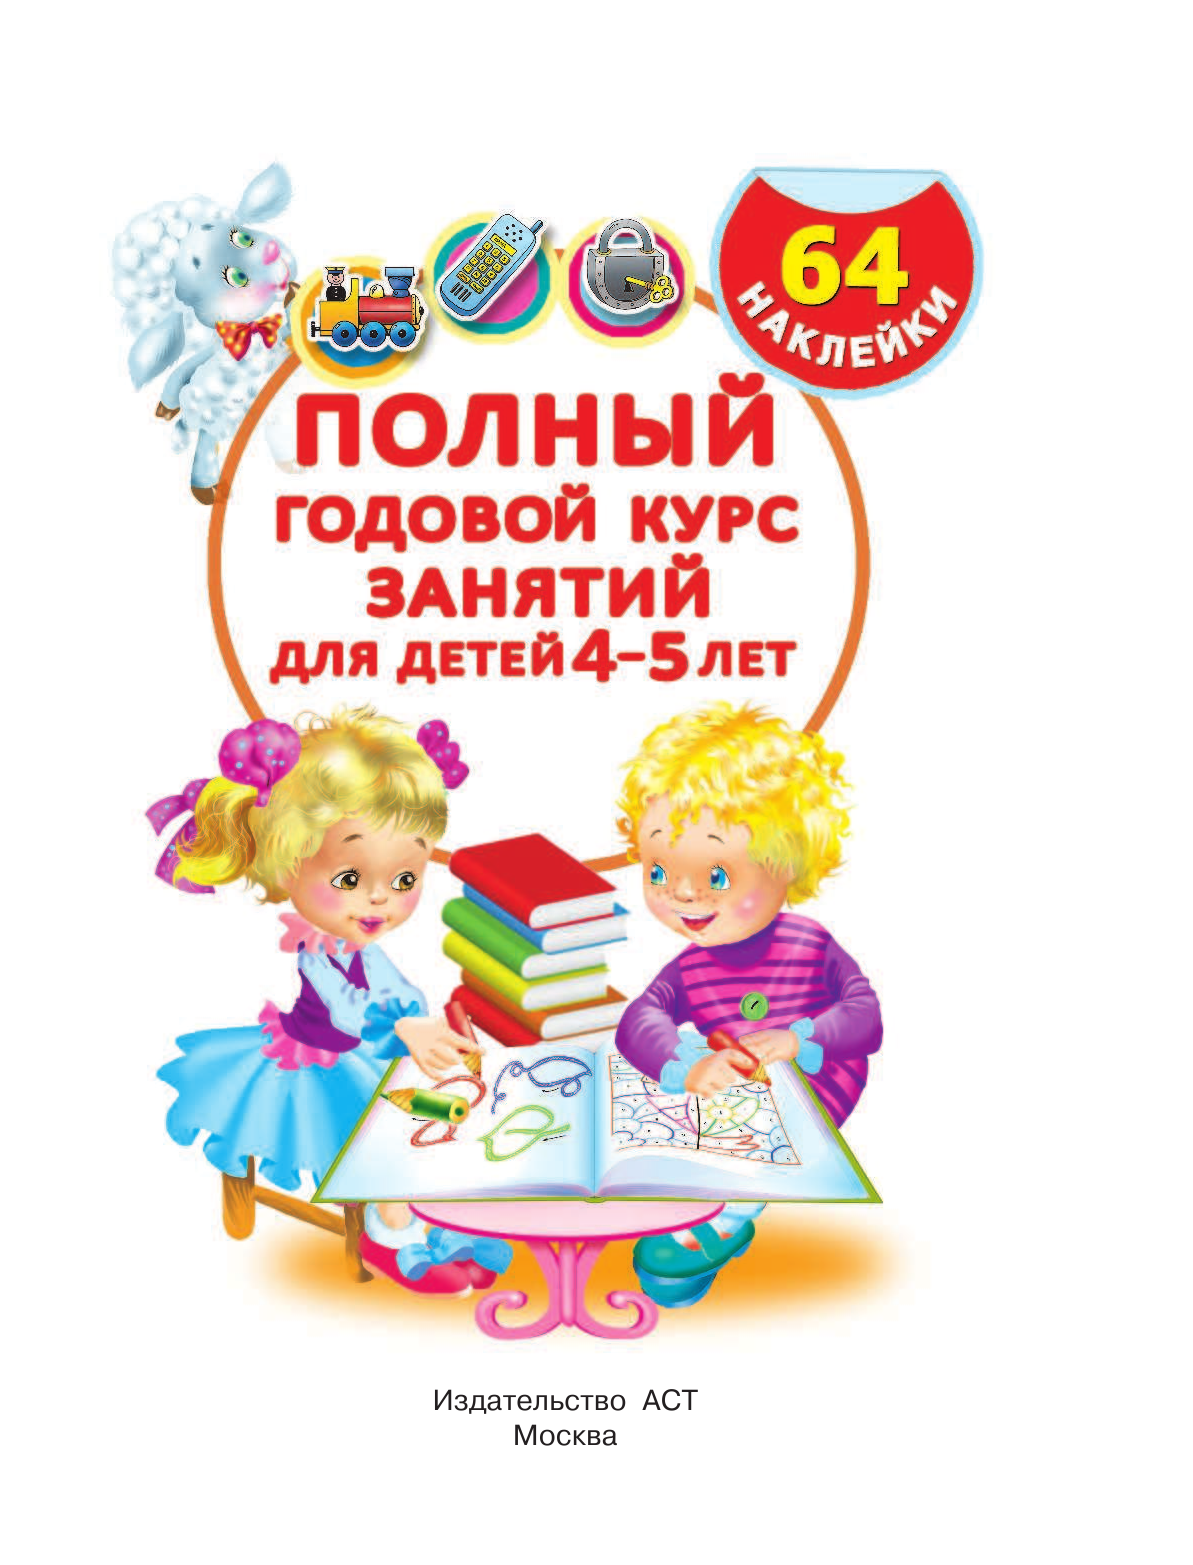 Матвеева Анна Сергеевна Полный годовой курс занятий для детей 4-5 года с наклейками - страница 2